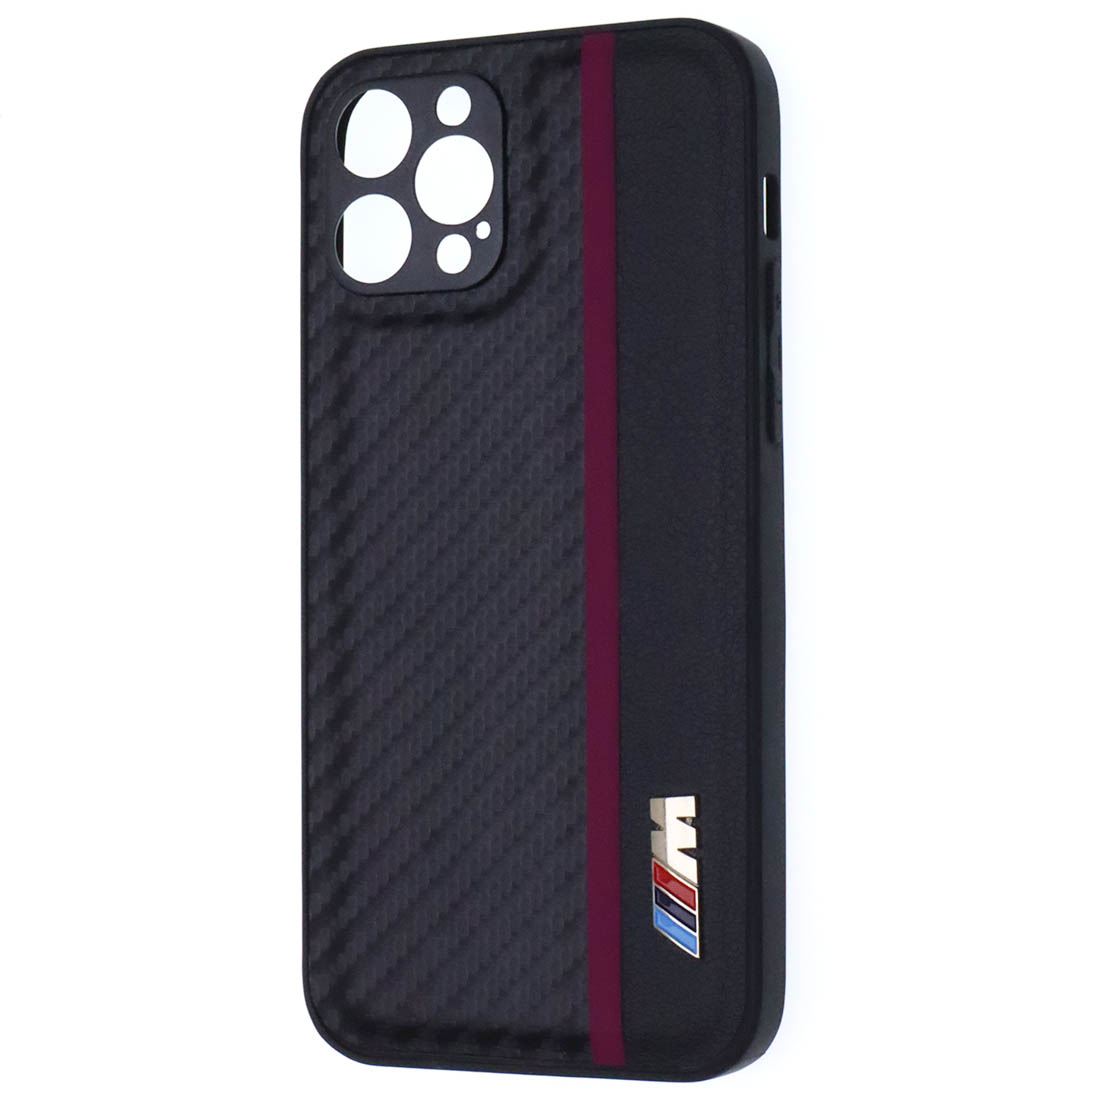 Чехол накладка для APPLE iPhone 12 Pro, силикон, карбон, экокожа, защита камеры, знак BMW M серии, цвет черный с бордовой полоской